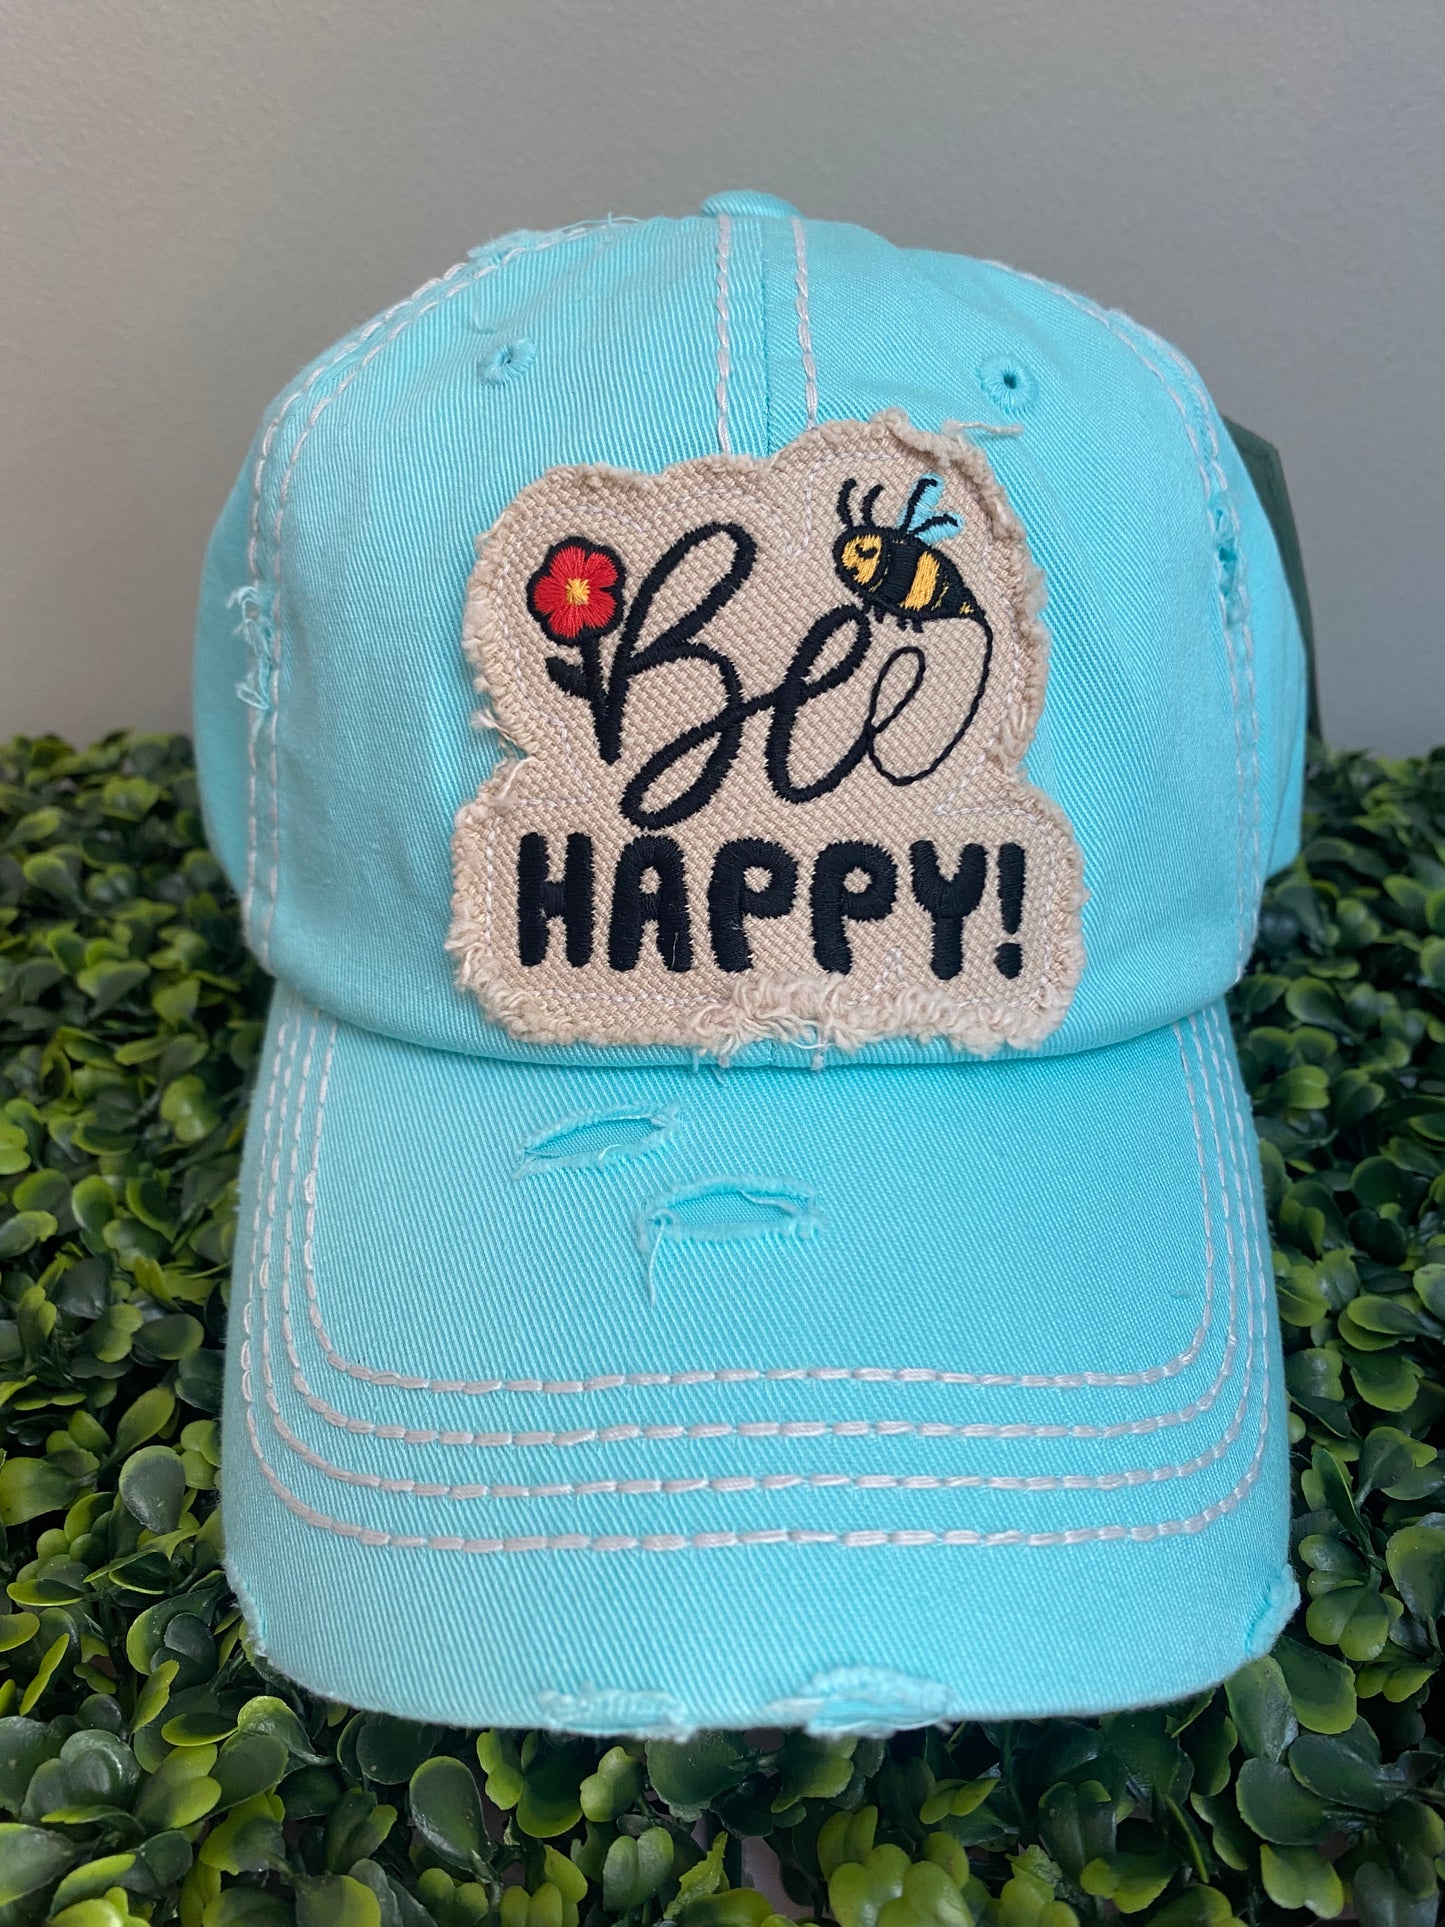 The Bee Happy Baseball Cap